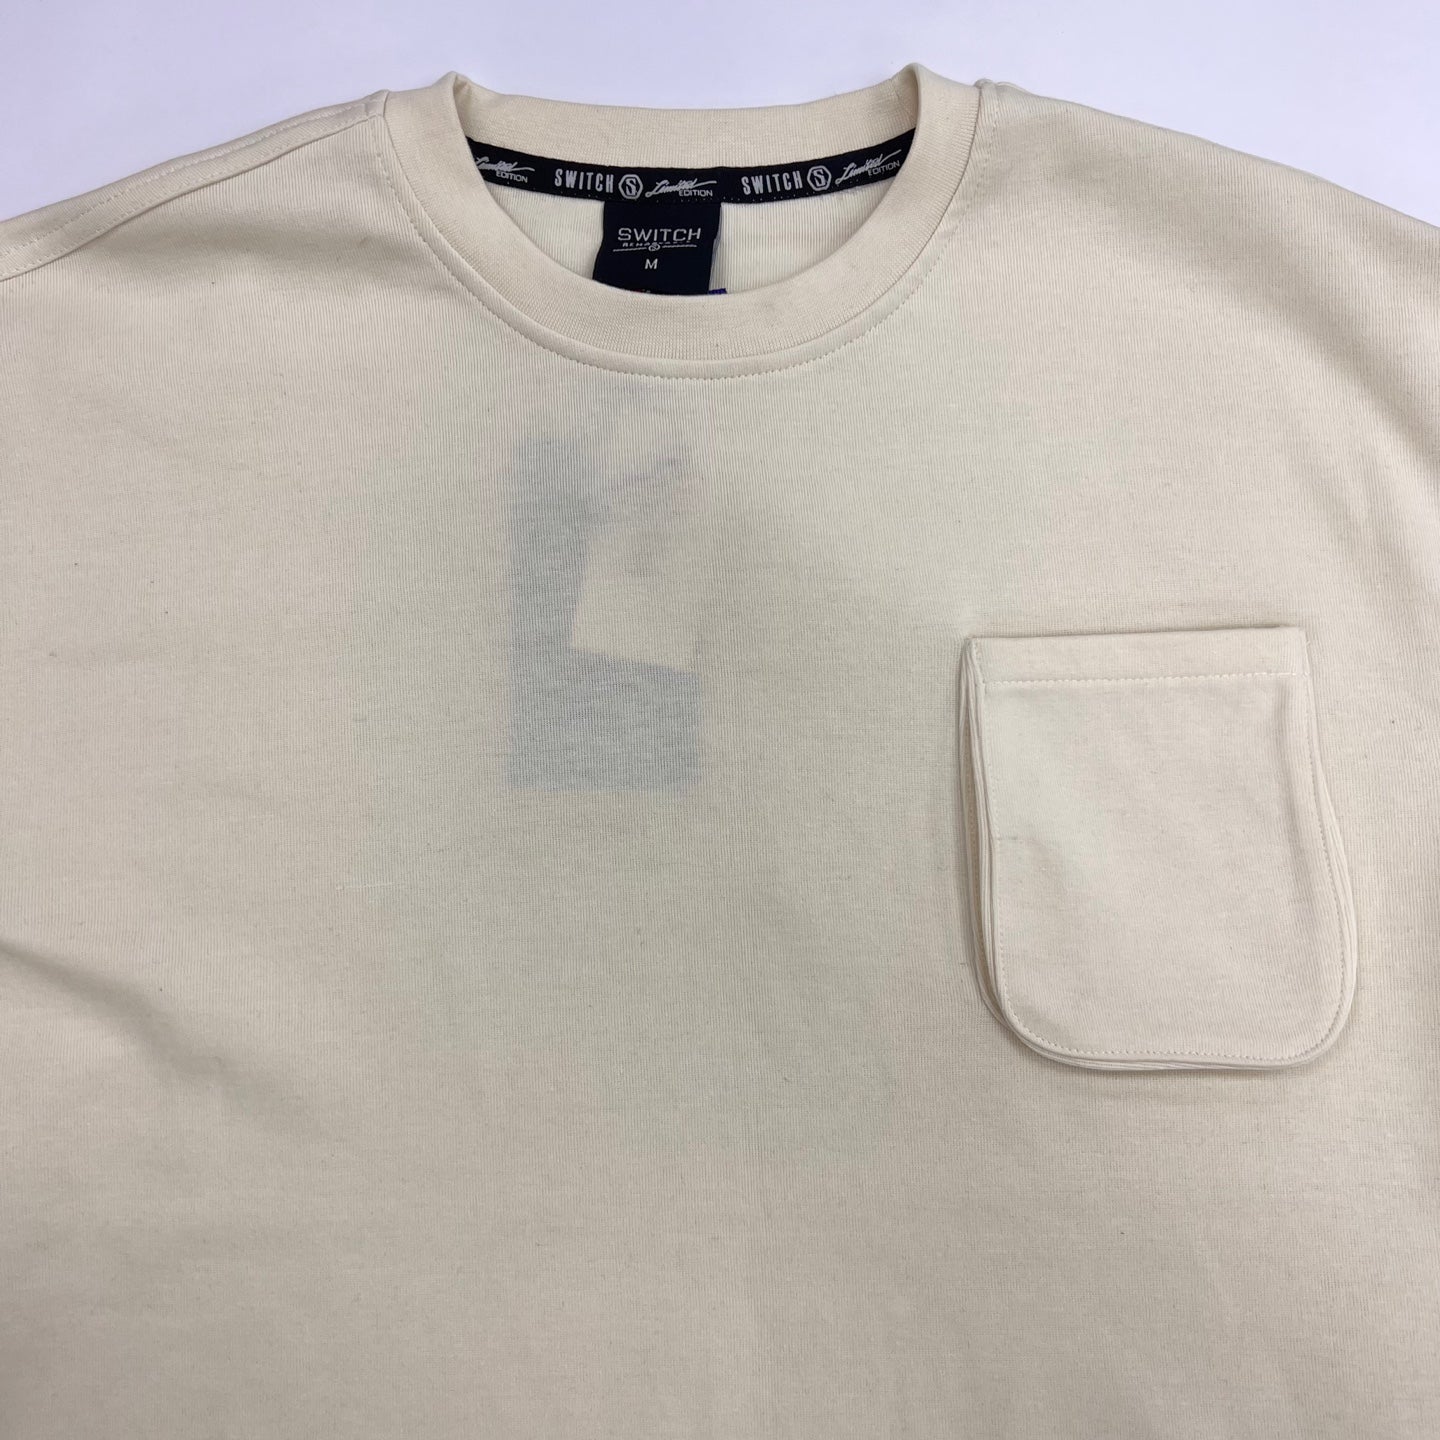 REBELMINDS Soft 3D Pocket Plain T-Shirt